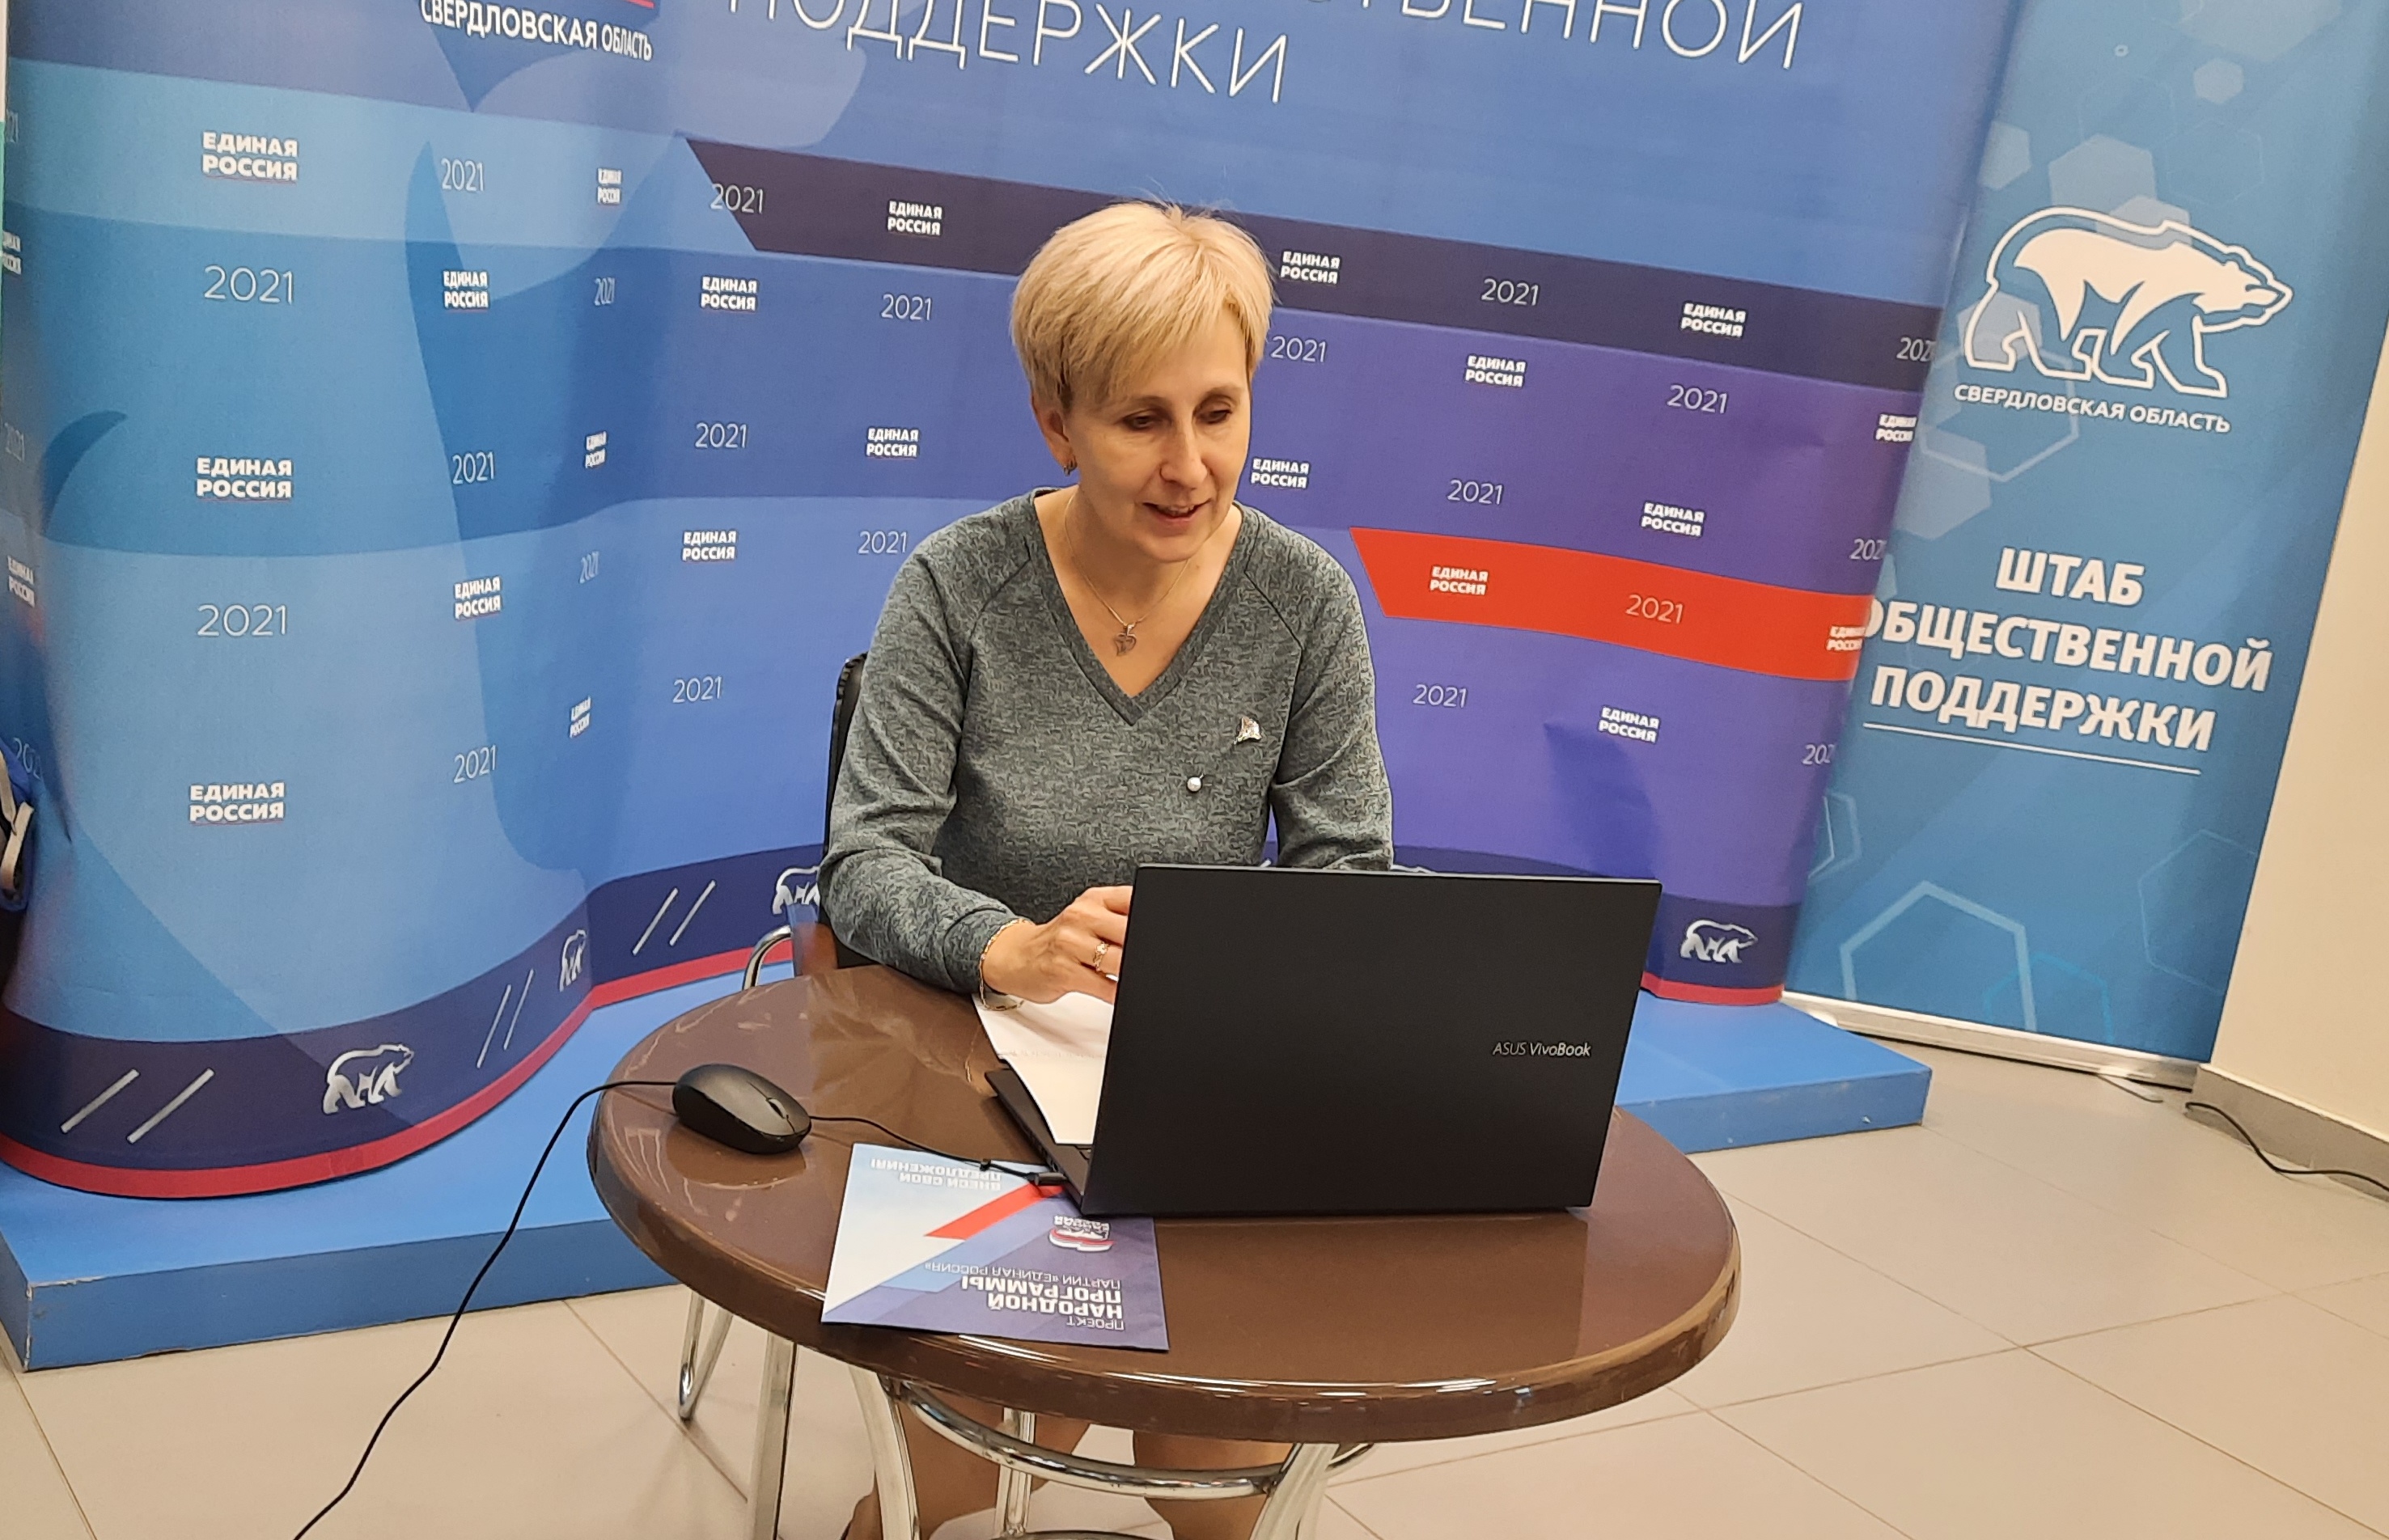 Елена Бондаренко,  депутат Екатеринбургской городской Думы,  провела онлайн-приём граждан 